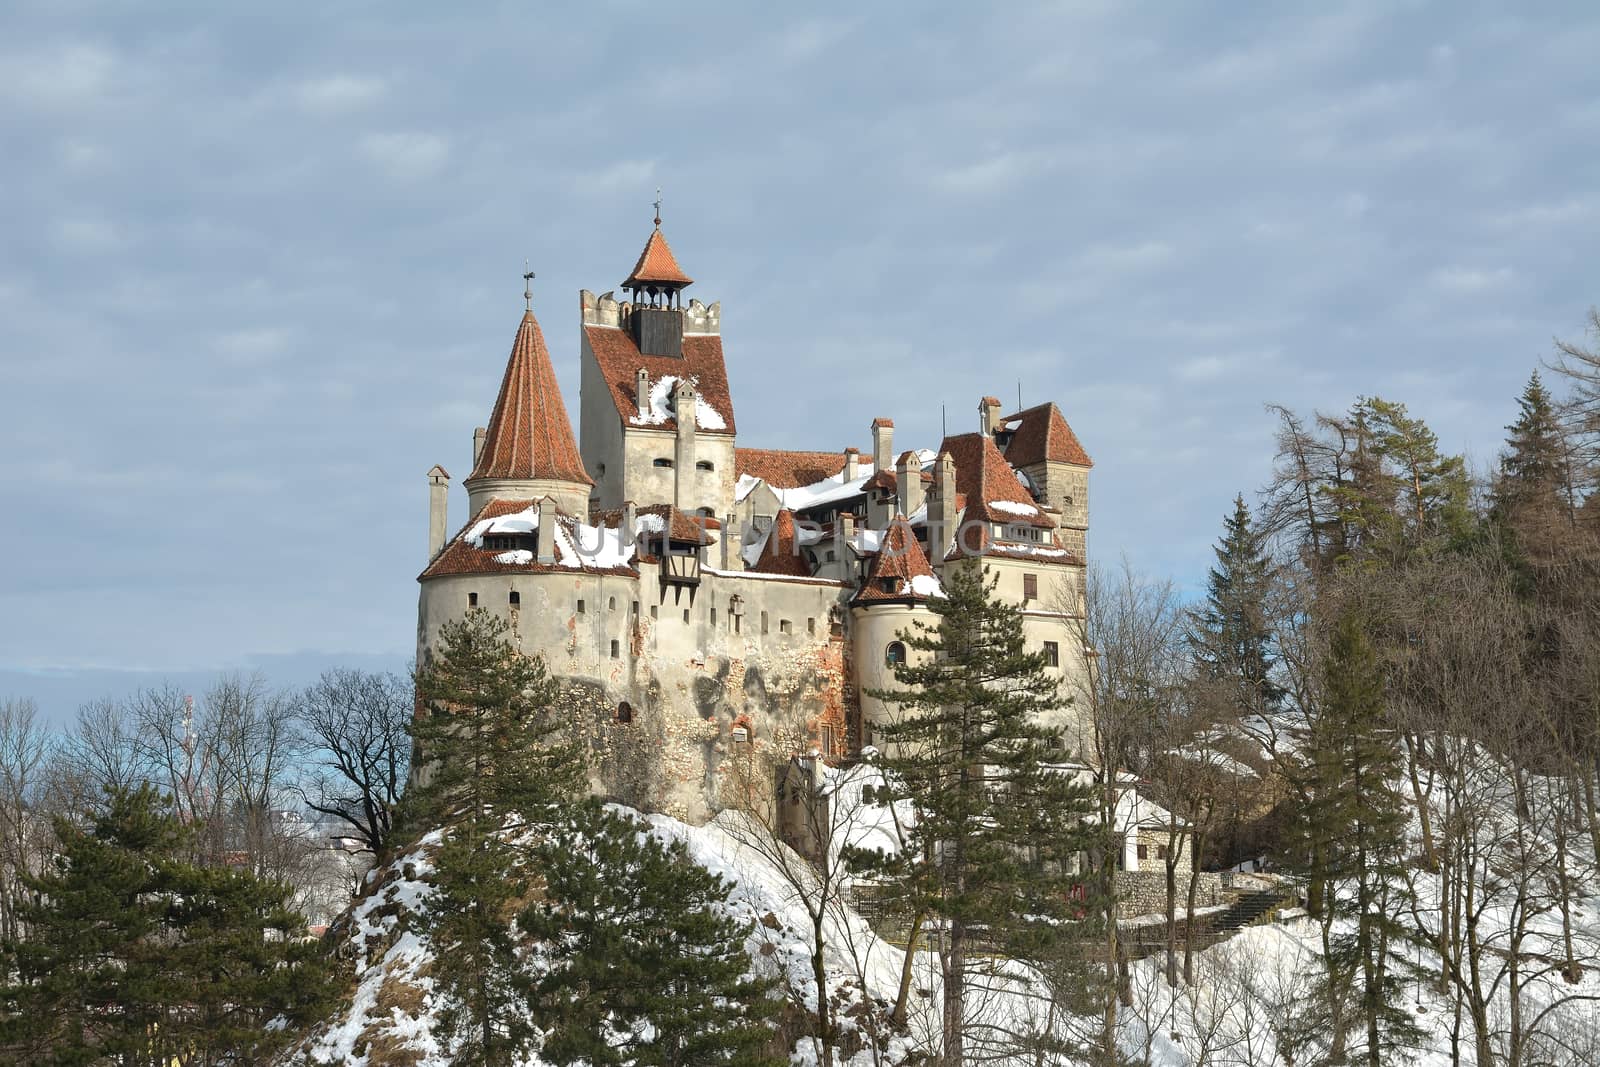 Dracula's Bran Castle